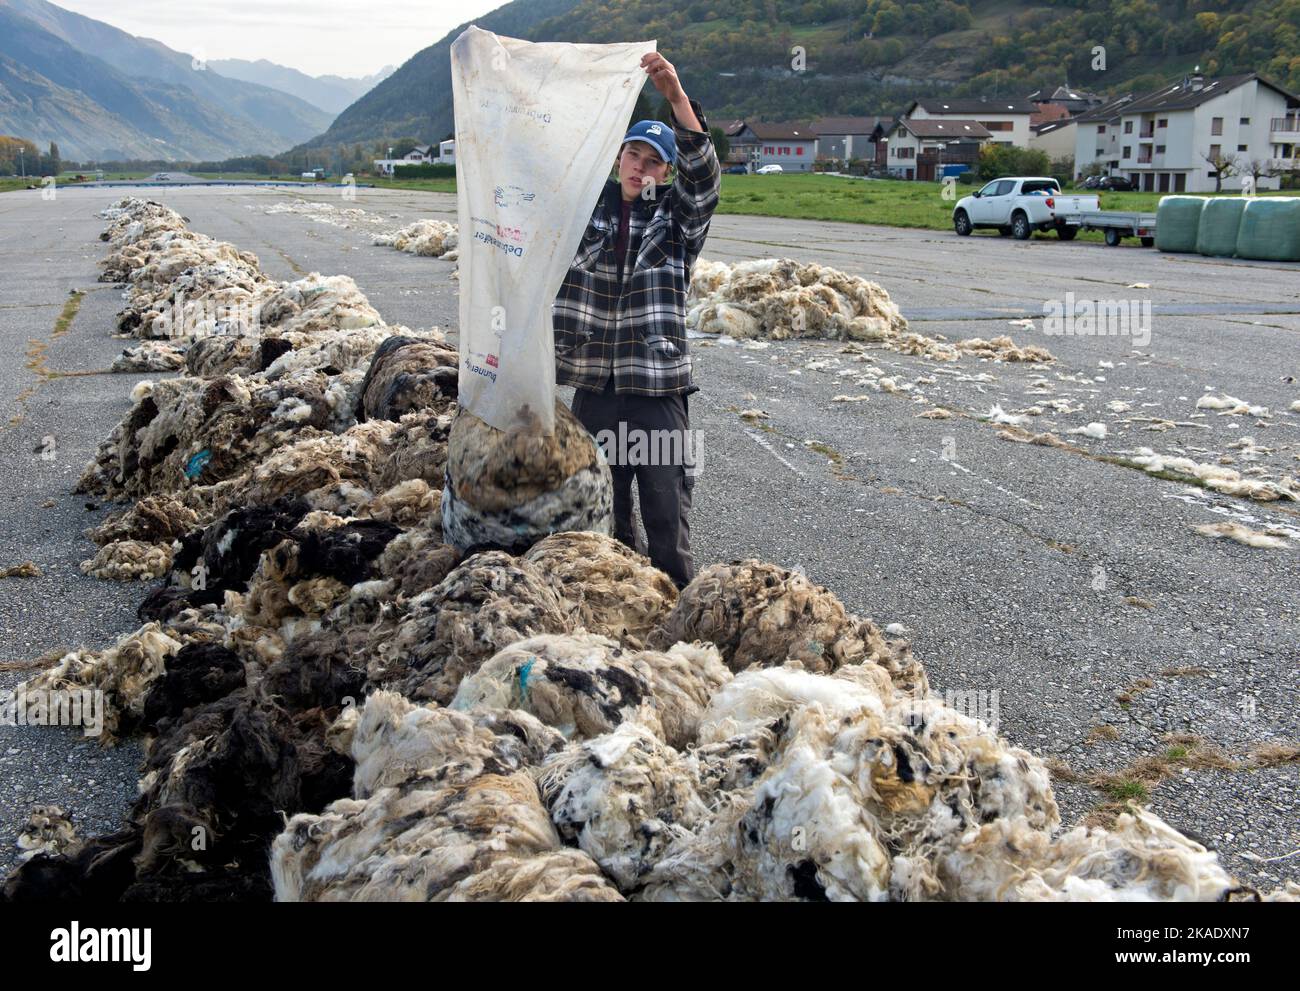 Assistant vide un sac de laine de mouton à un point de collecte pour la laine de brebis blacknace du Valais, Turtmann, Valais, Suisse Banque D'Images